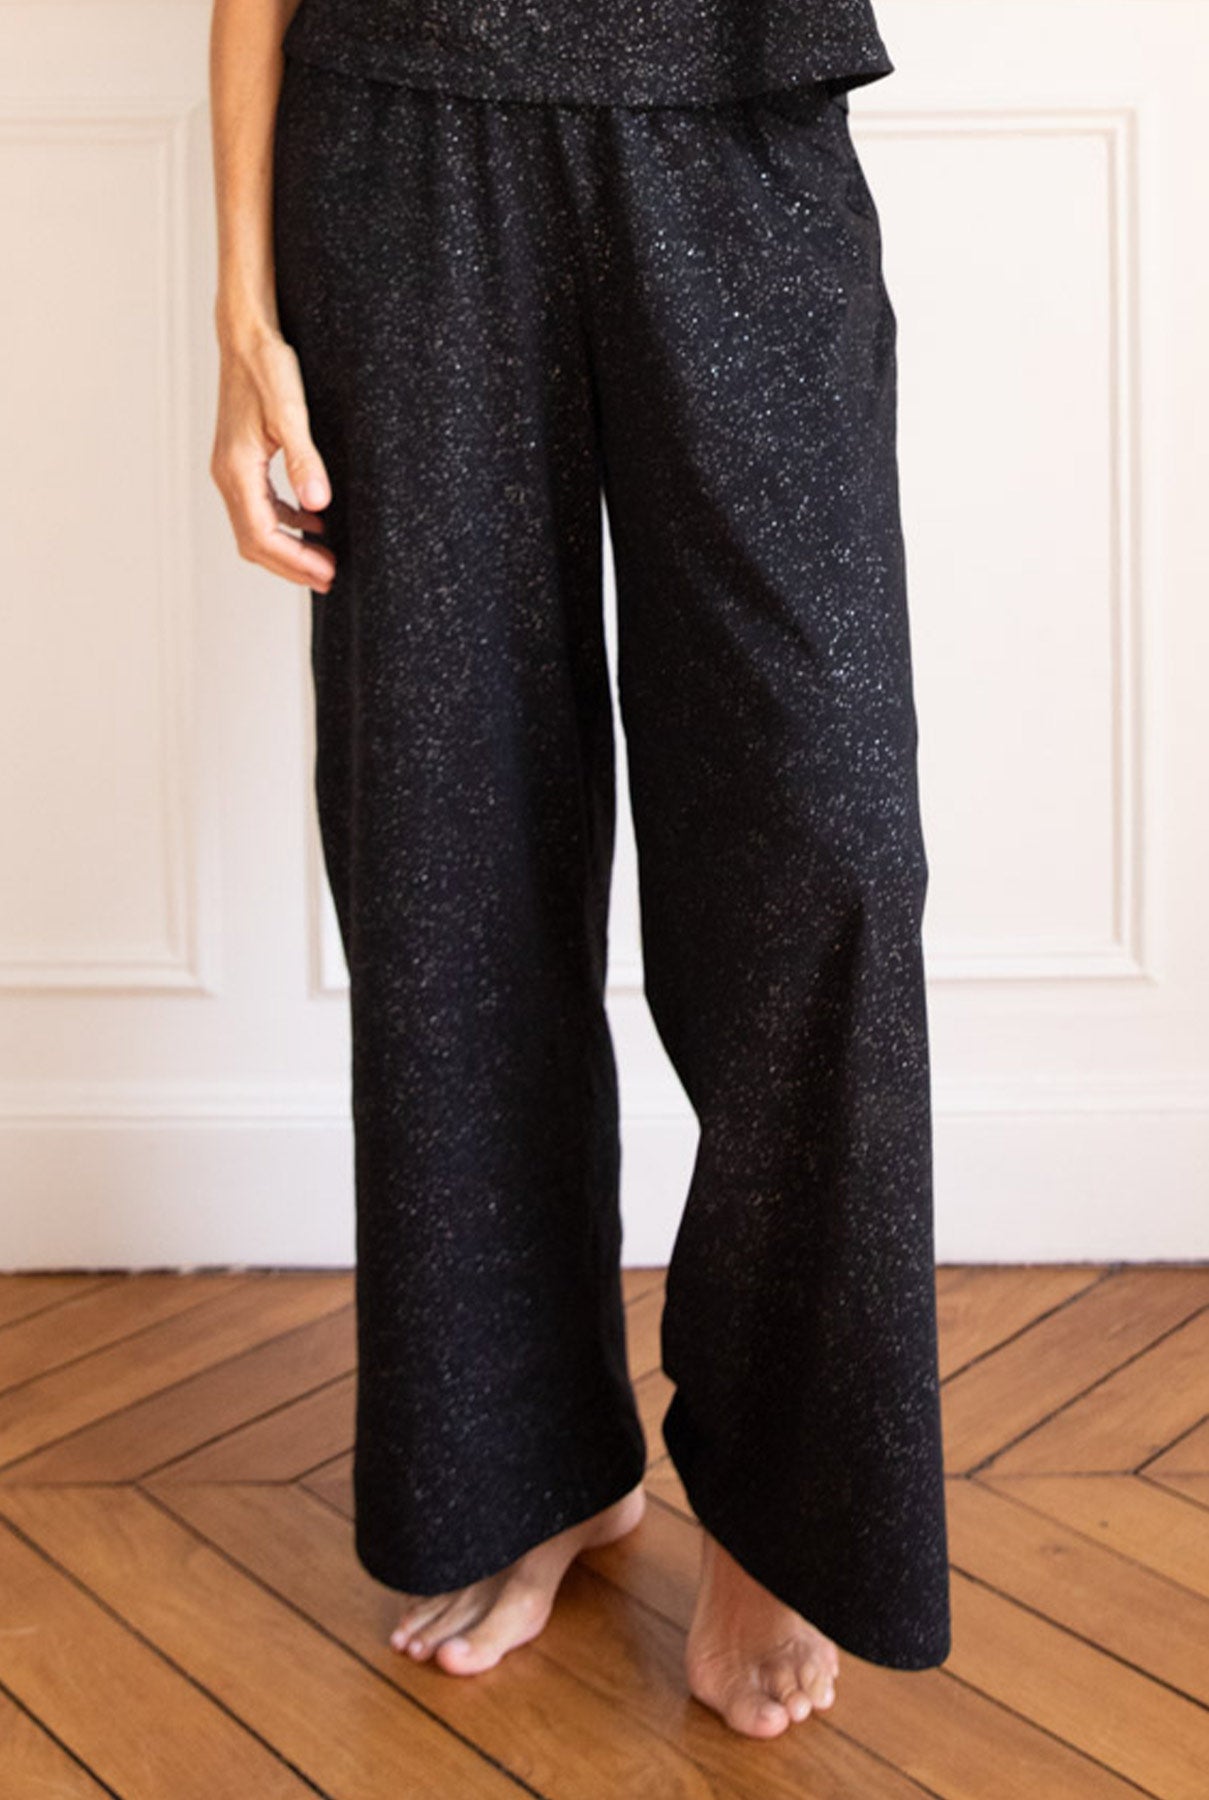 Pyjama long coton BIO - Paillettes Noir - Pantalons fluides - We Are Jolies